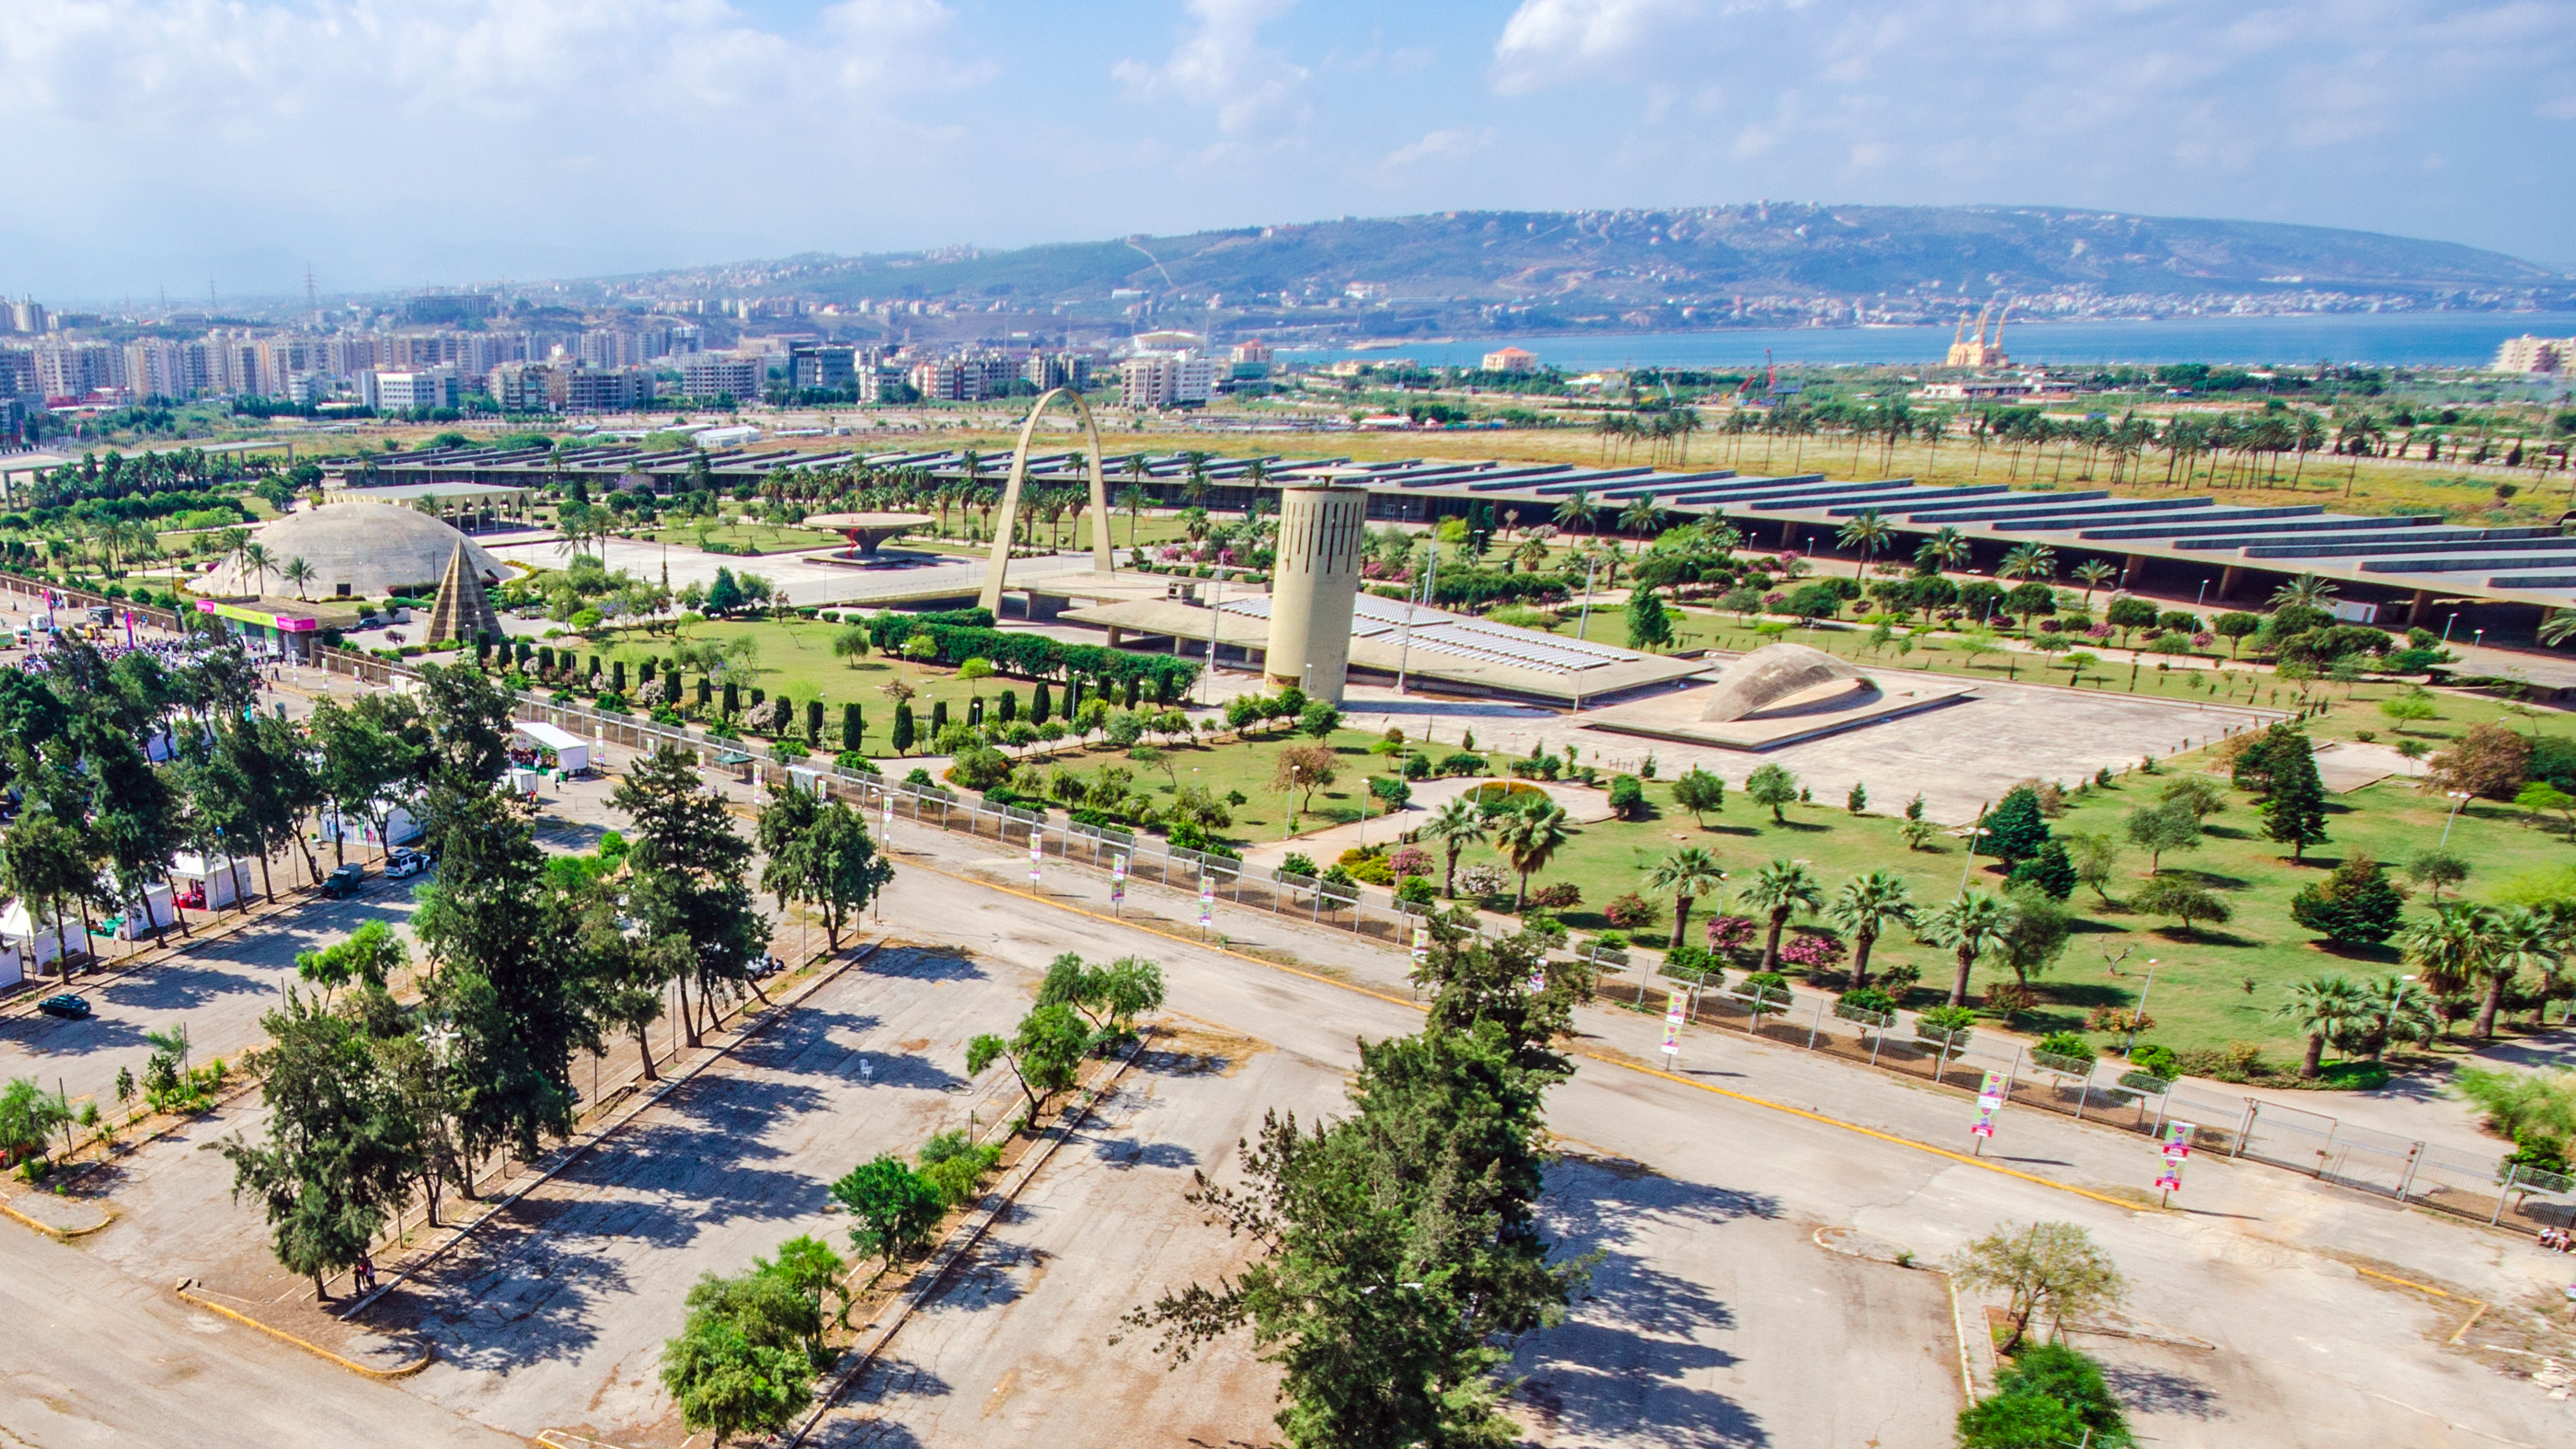 Oscar Niemeyer's Rachid Karami International Fair in Tripoli, Lebanon